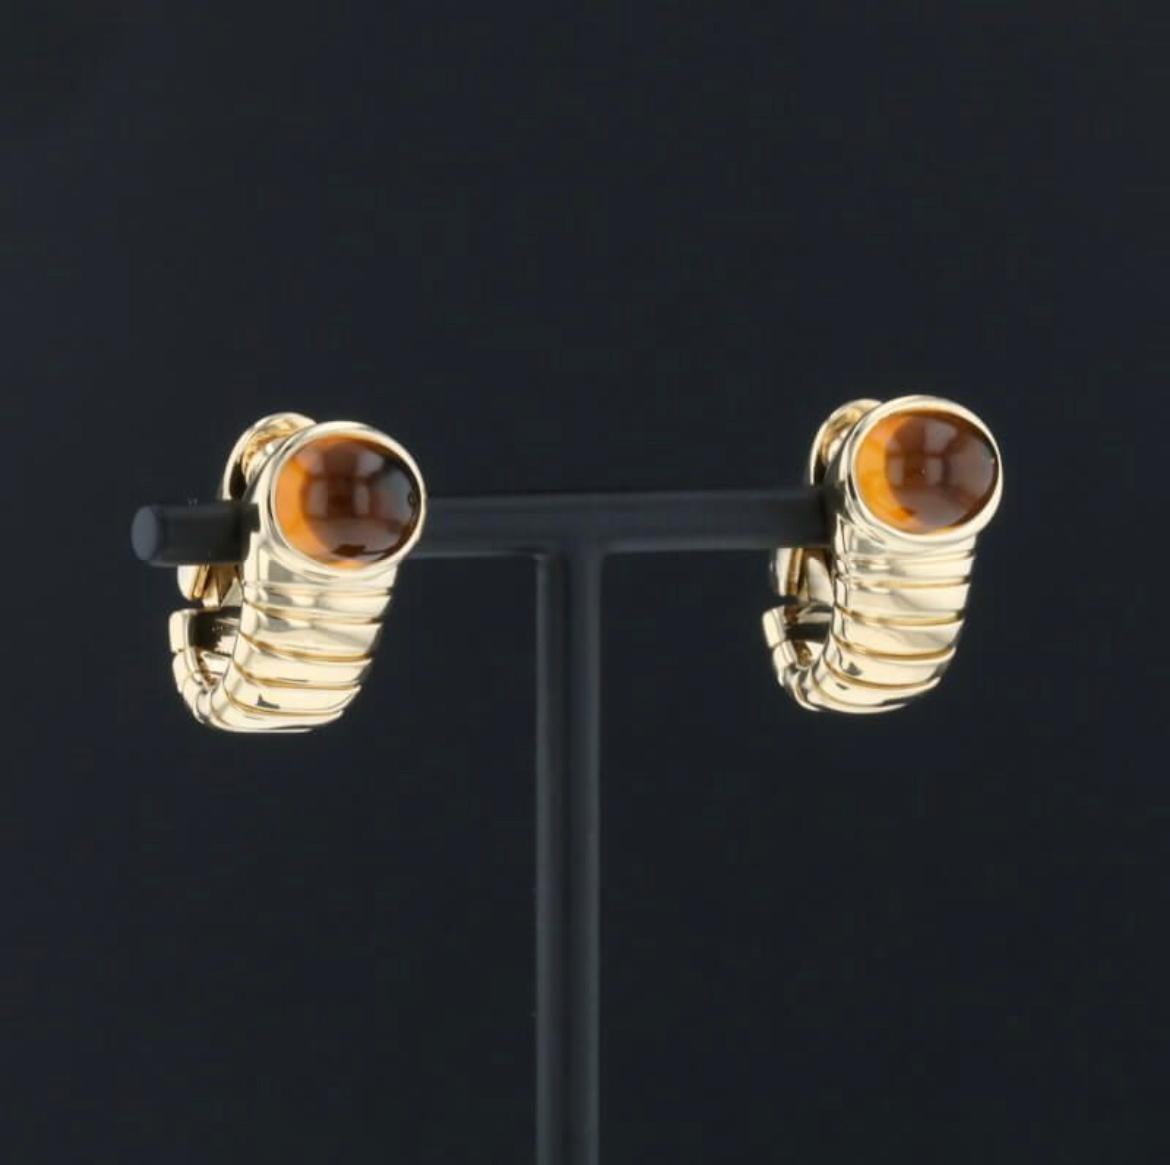 Klassische Bulgari Design für diese Tubogas Ohrringe, entworfen und hergestellt in Italien in massivem 18k Gelbgold, sie verfügen über 2 lebendige große Citrin. Hergestellt in Italien, um 1980

Hat ein Gesamtgewicht von 22 Gramm.
Abmessungen: cm 1,2